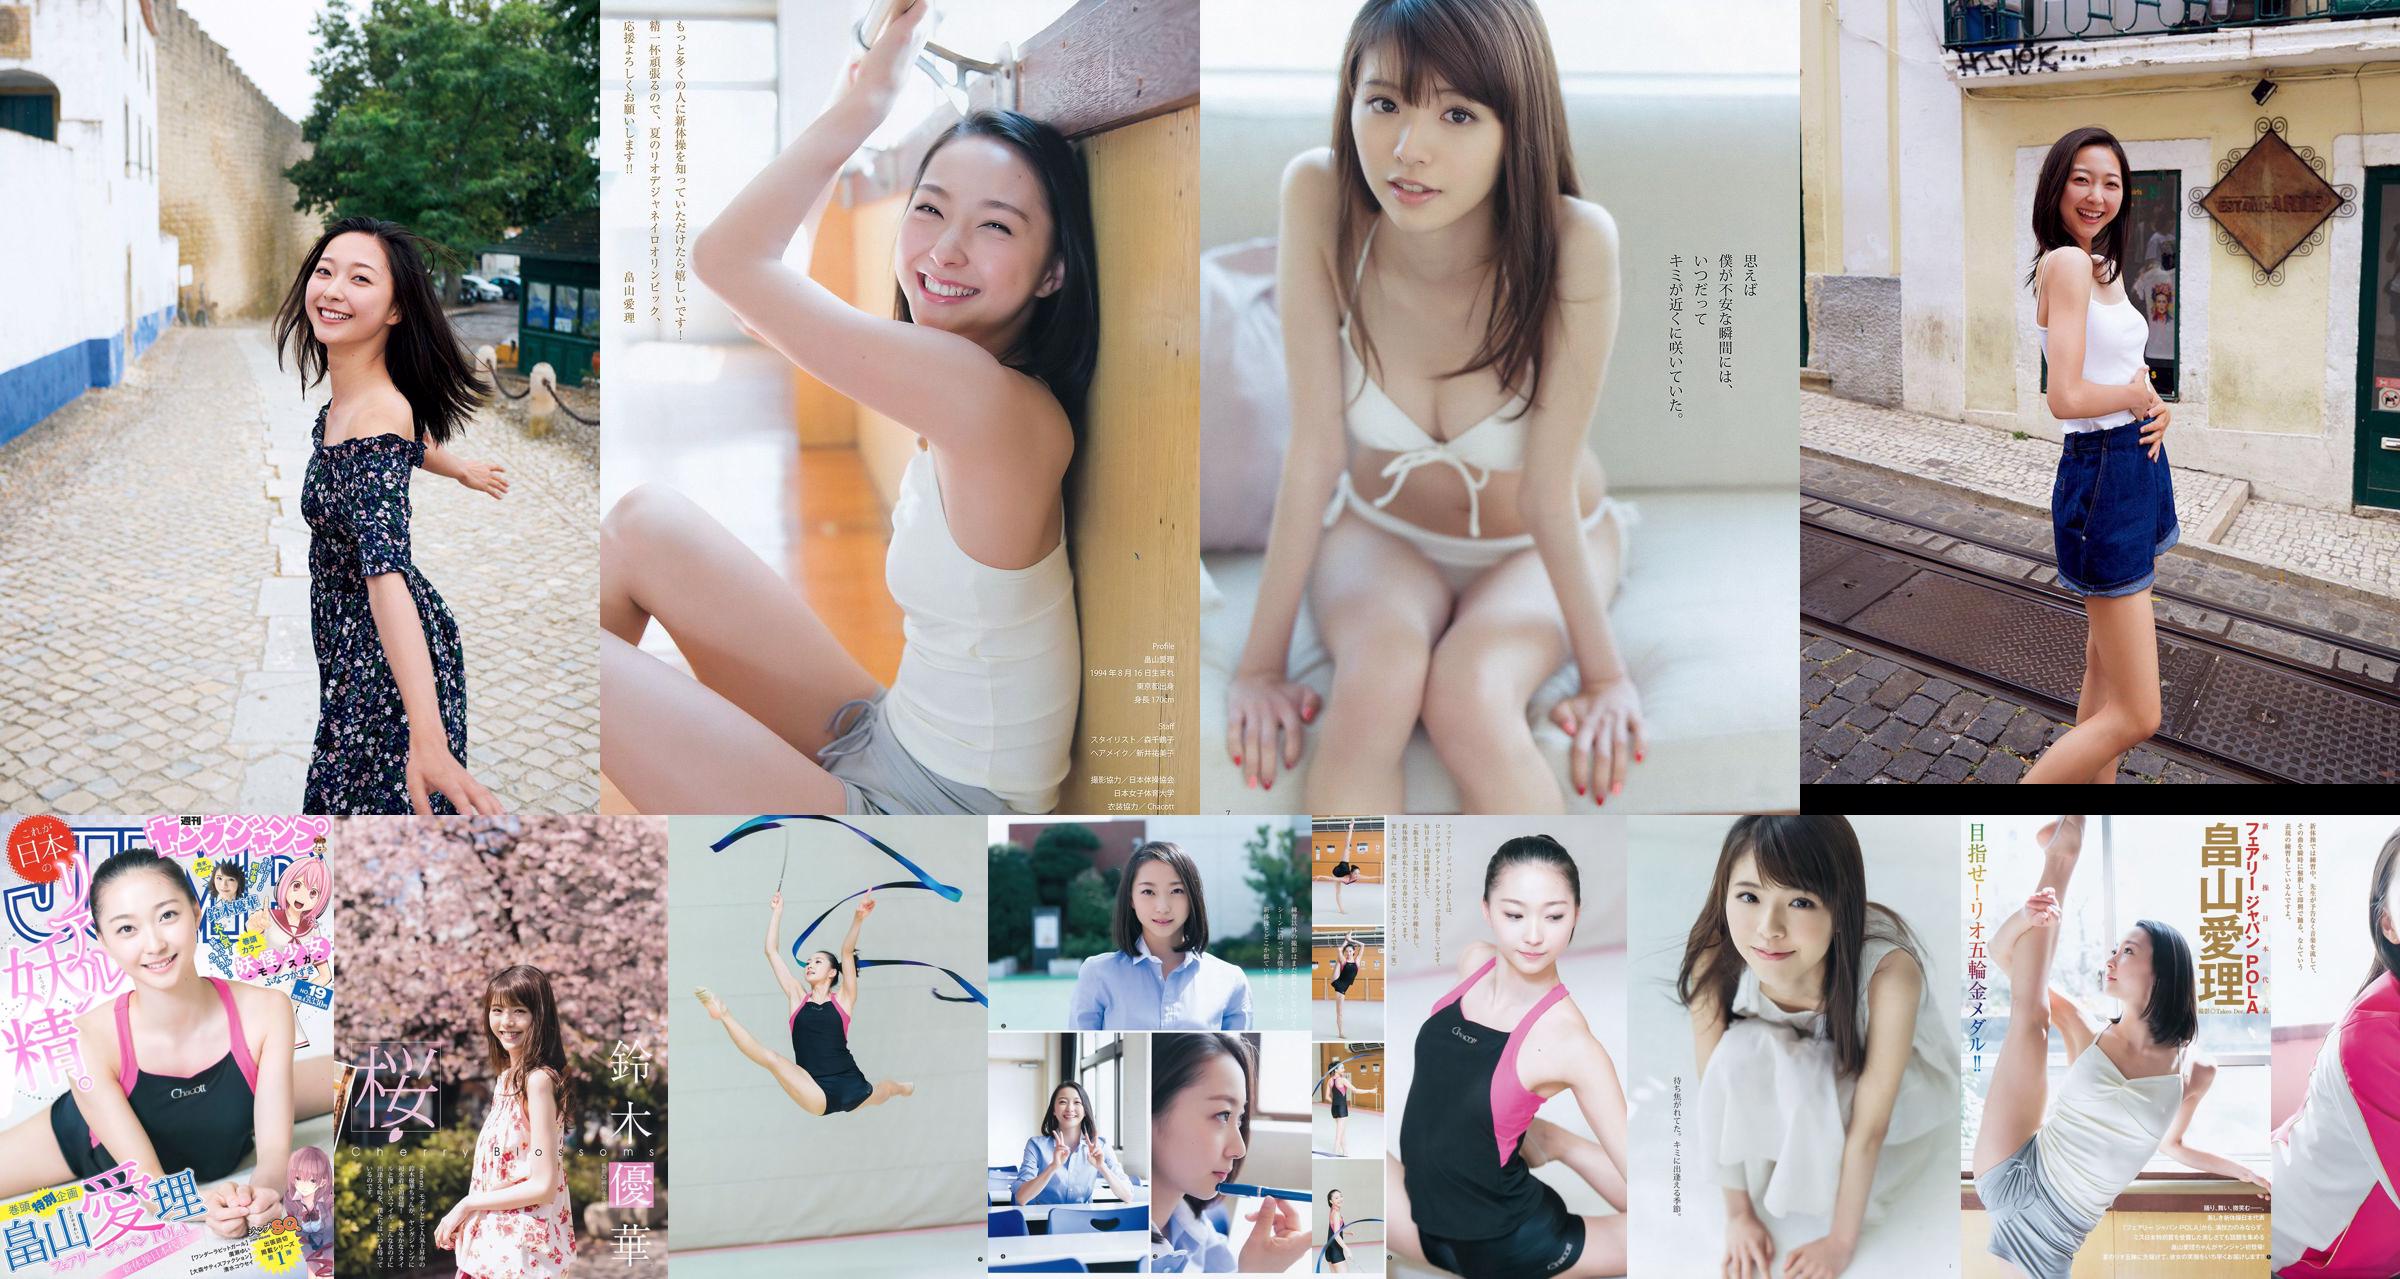 [ENTAME] Mai Shiraishi Nanase Nishino Rena Shimada Yui Takano Uitgave maart 2014 Foto No.98ffbf Pagina 2